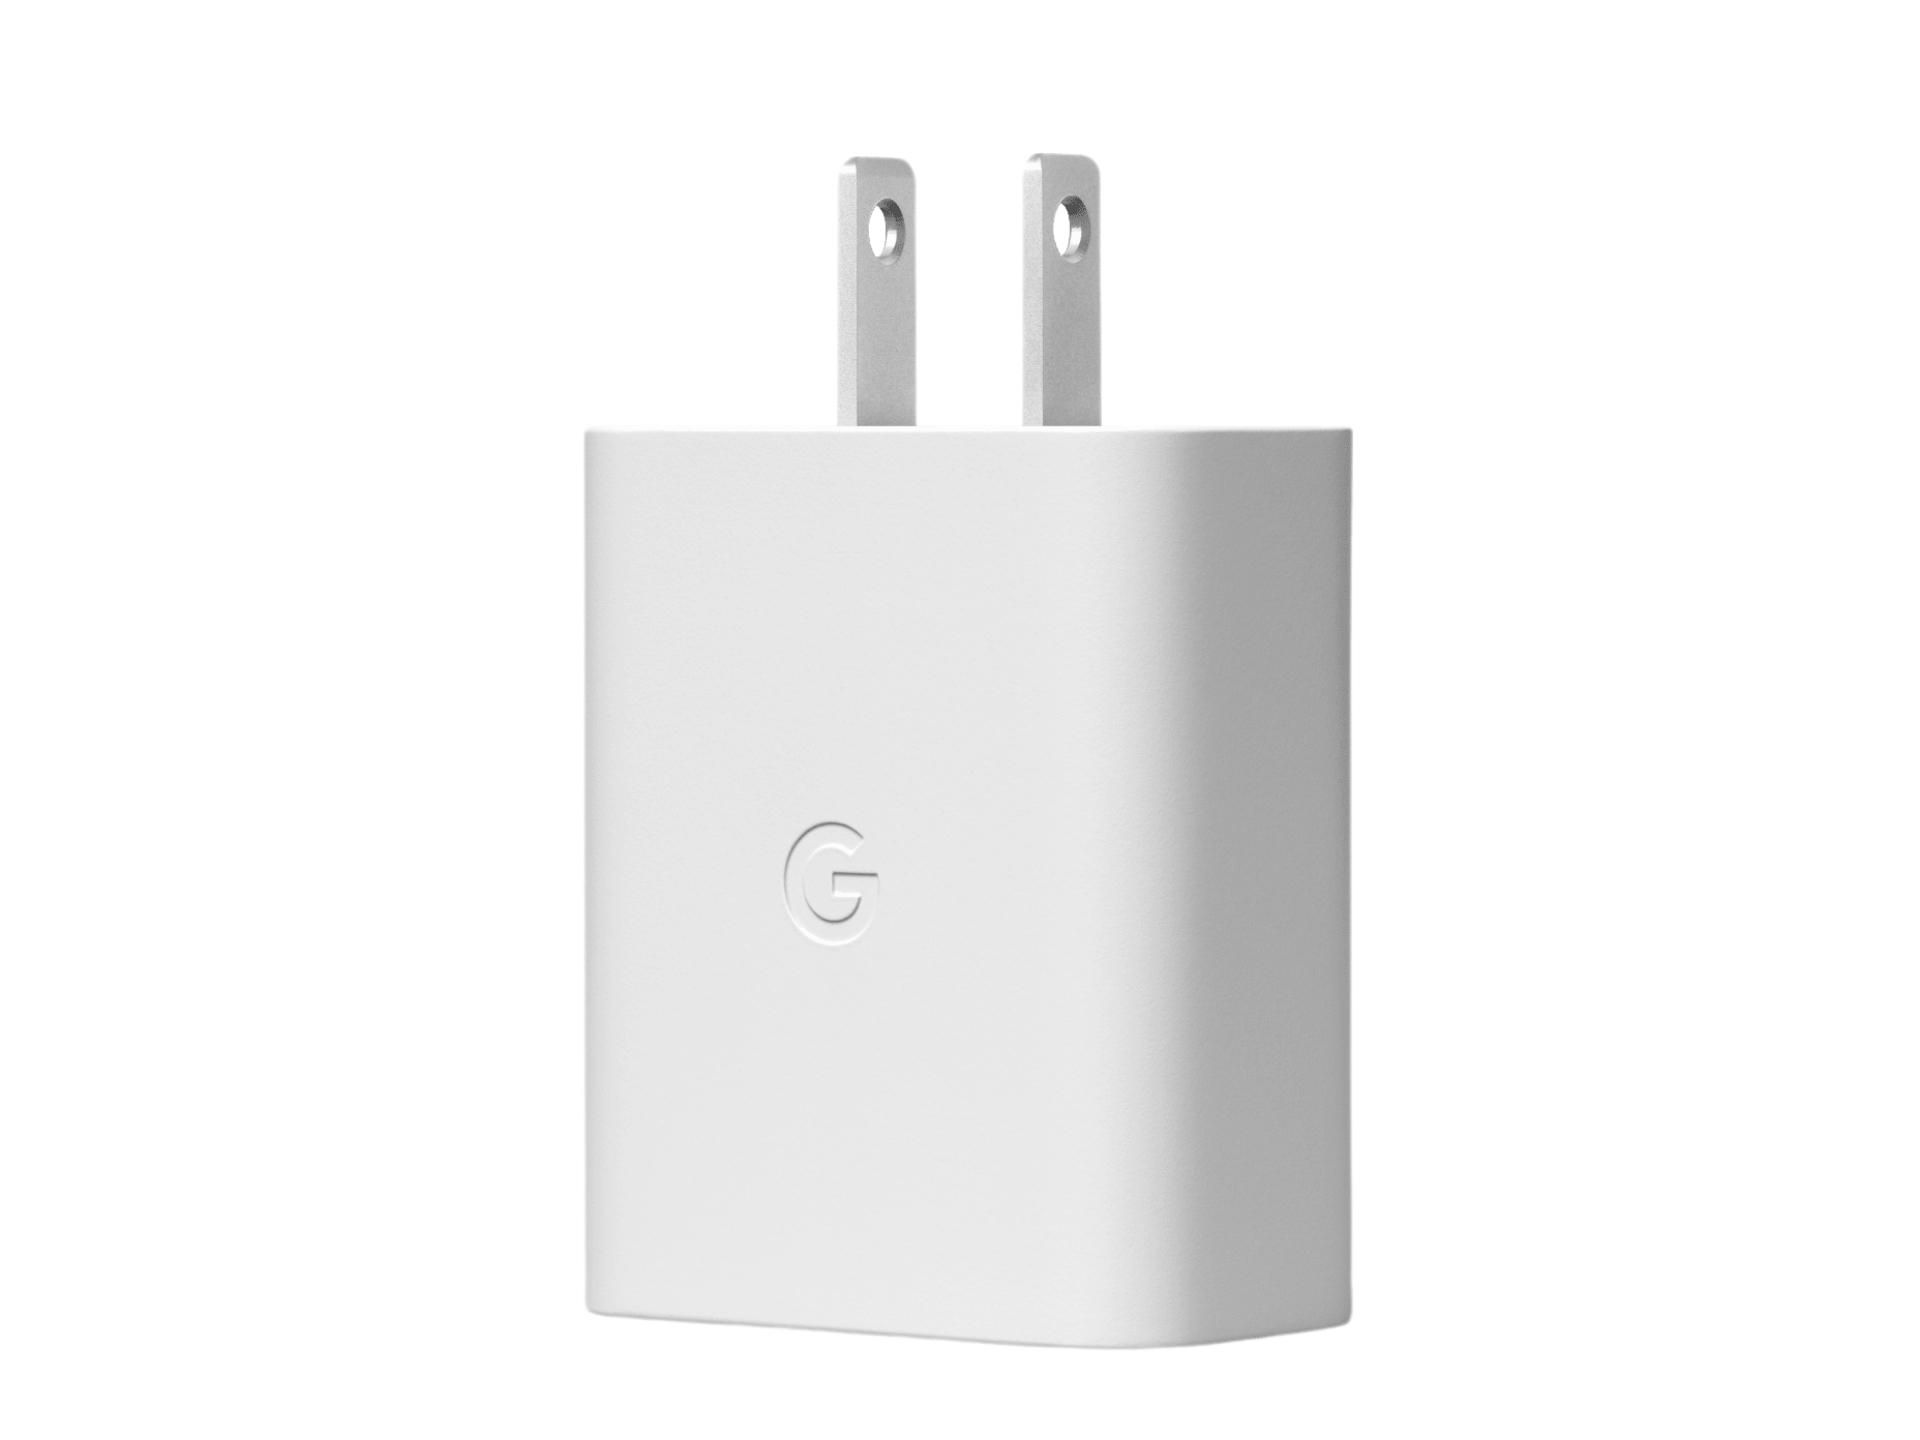 Google'ın 30 W Şarj Cihazının Ürün Resmi